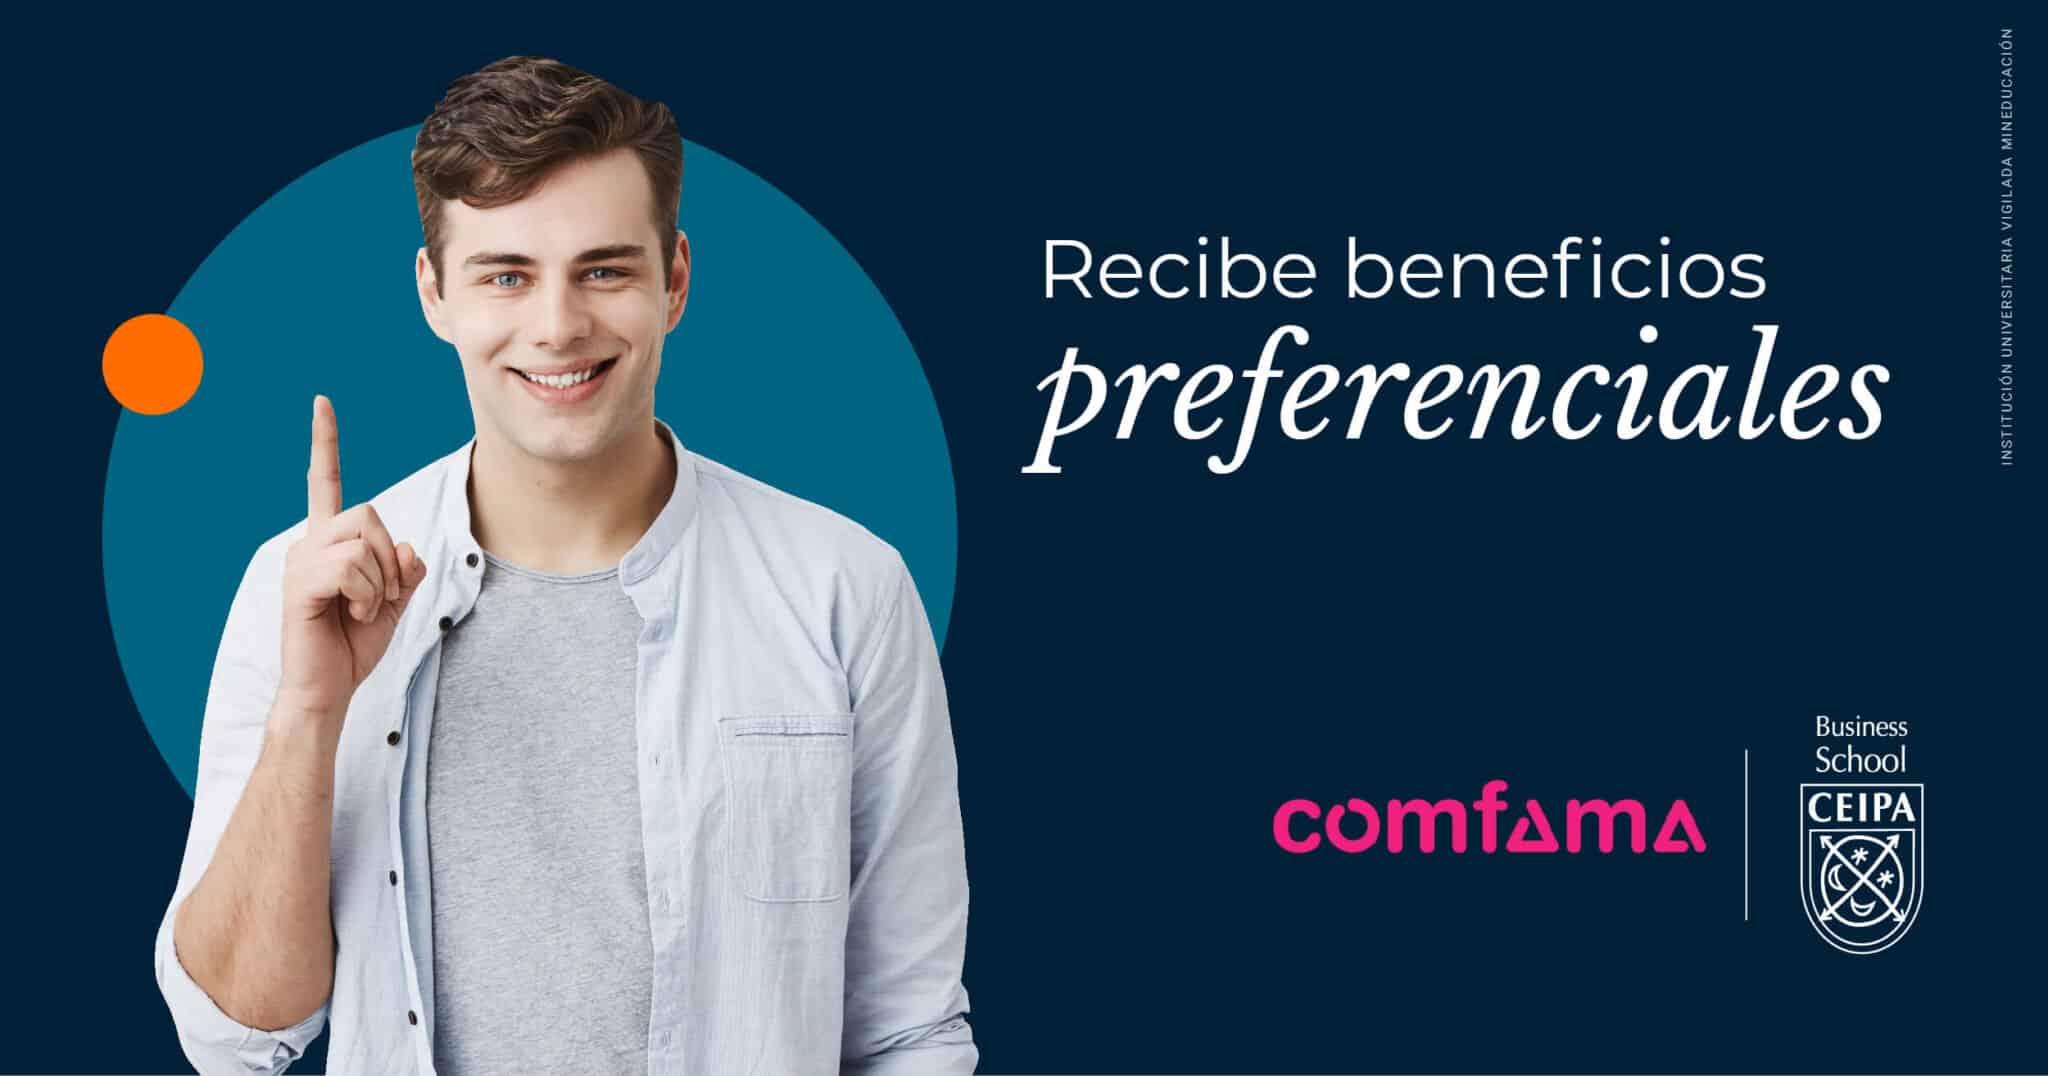 Recibe beneficios preferenciales Comfama Ceipa Business School